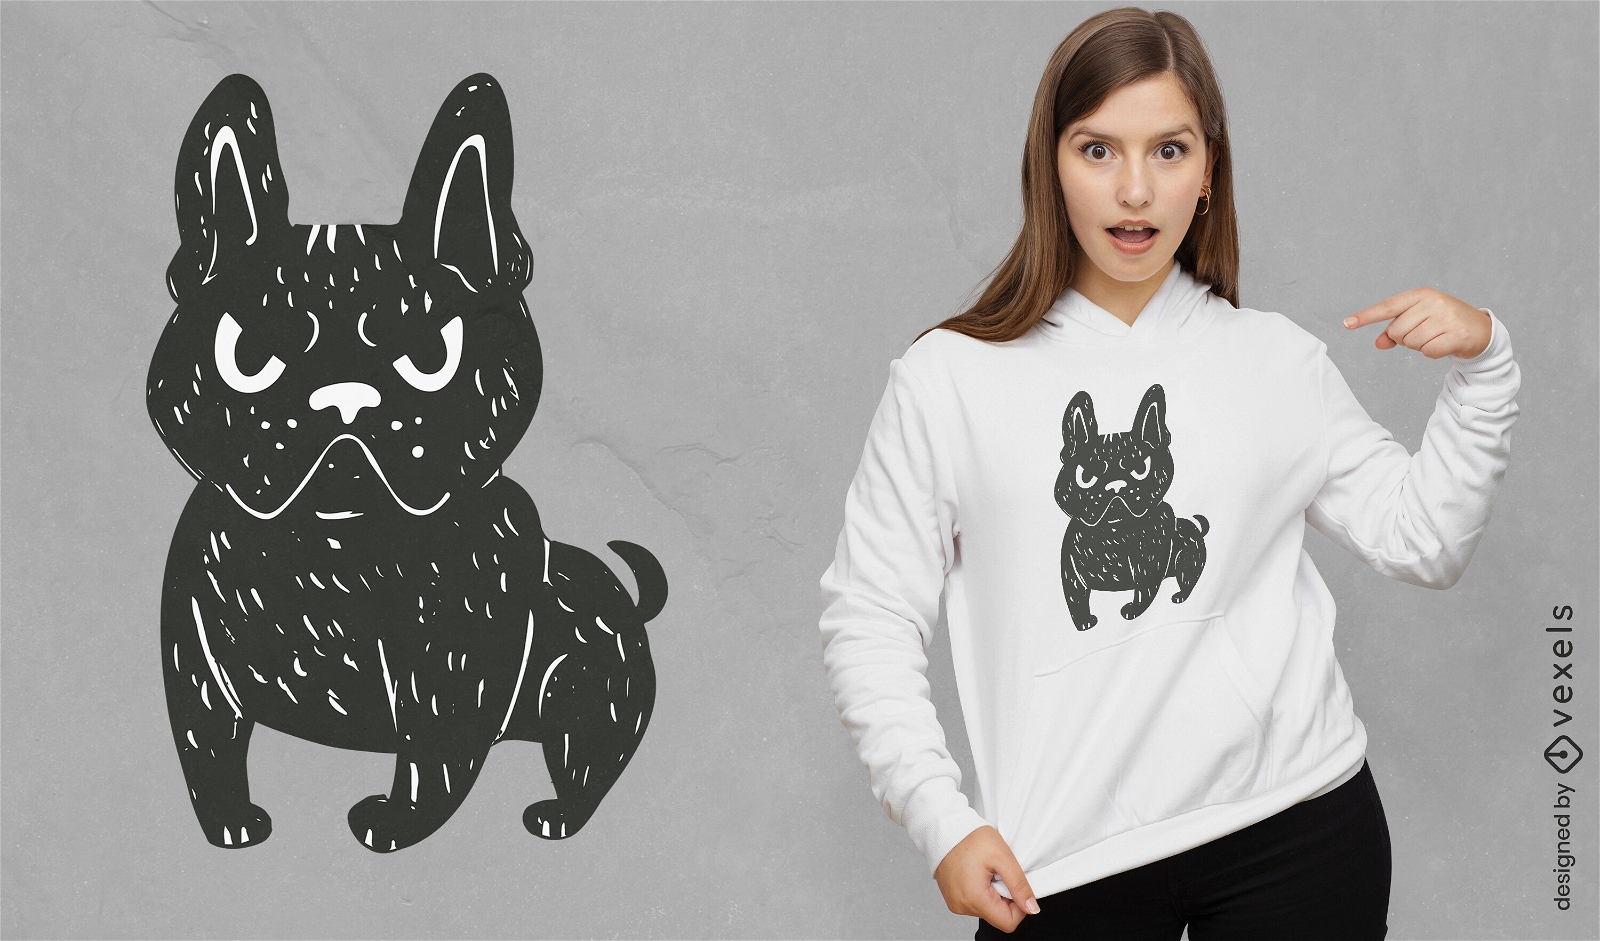 Wütender Hunde-T-Shirt-Entwurf der französischen Bulldogge